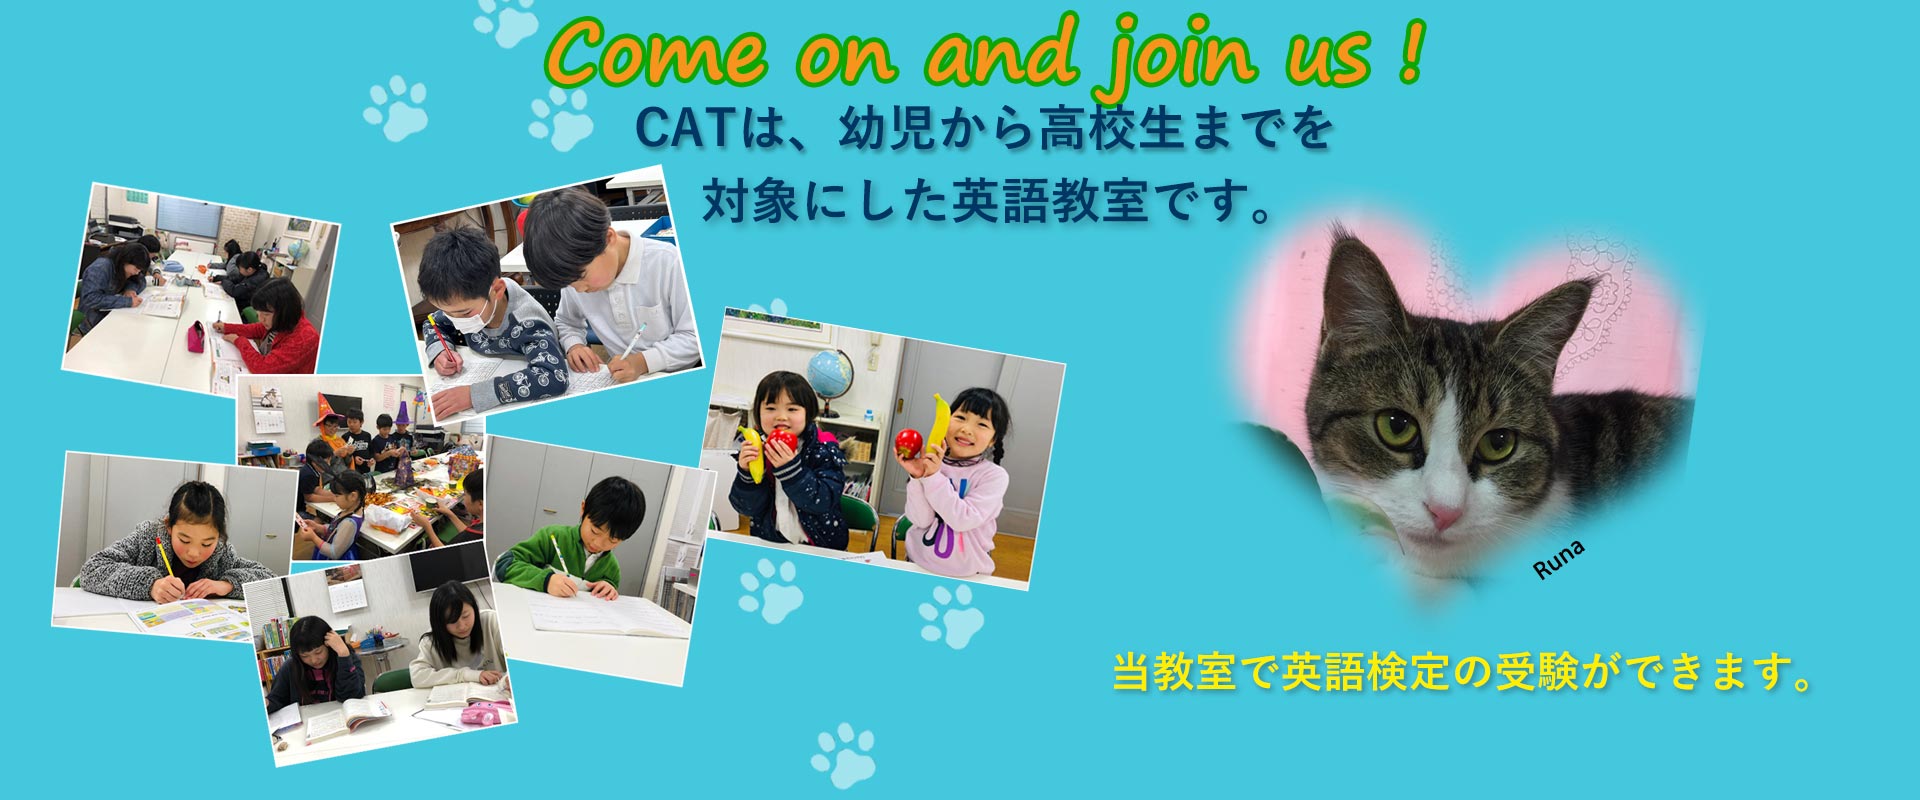 倉敷の英会話教室【CAT English School】のトップ画像です。